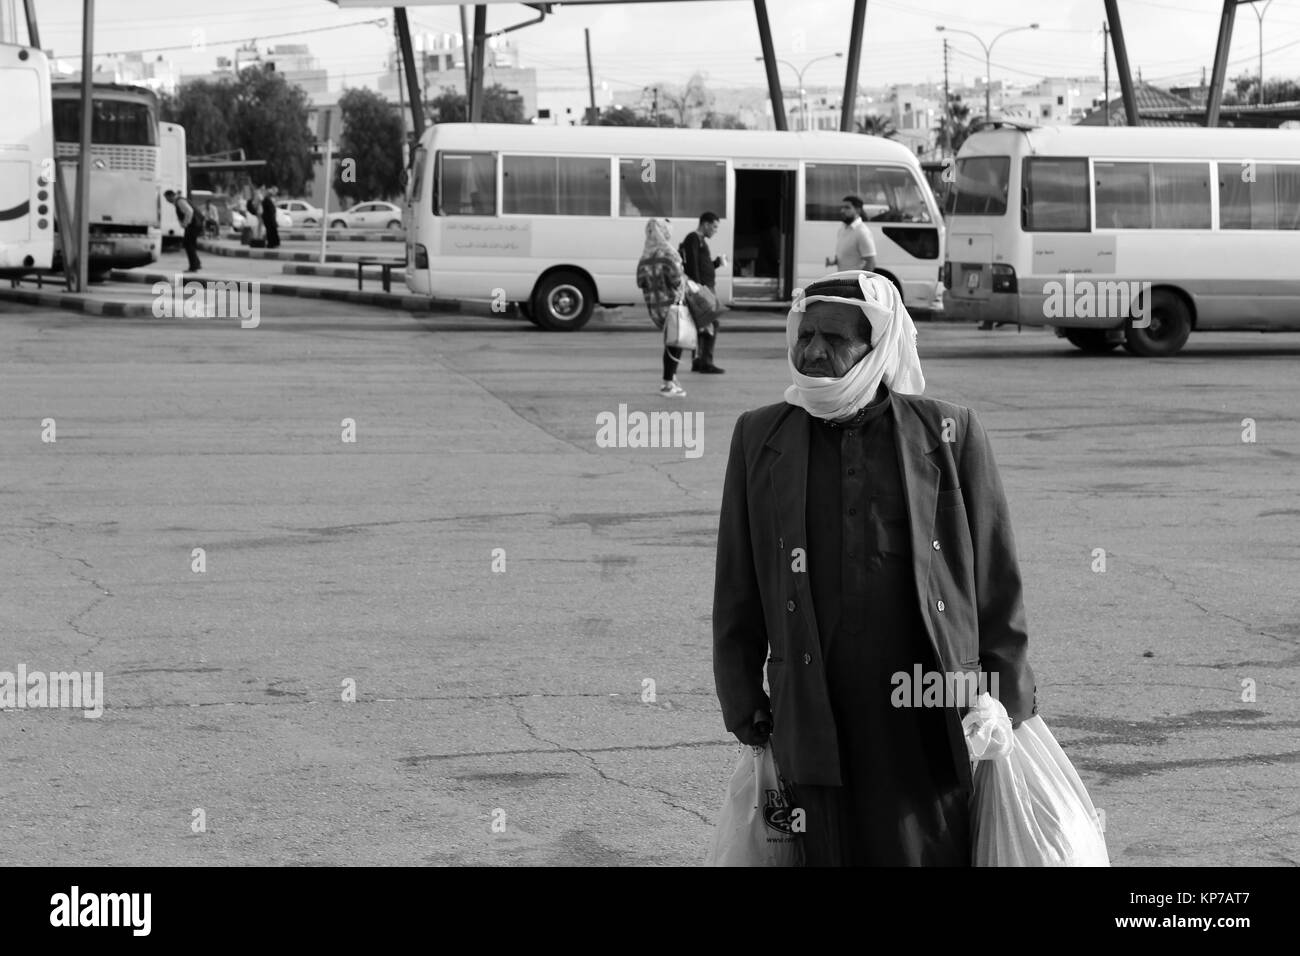 Vestido árabe altos en la parada del autobús - 20/05/2017 - Jordania/AMMAN - Sguardi Aridi por Ali Raffaele Matar shot en mayo de 2017, el hombre errante melancólico Foto de stock